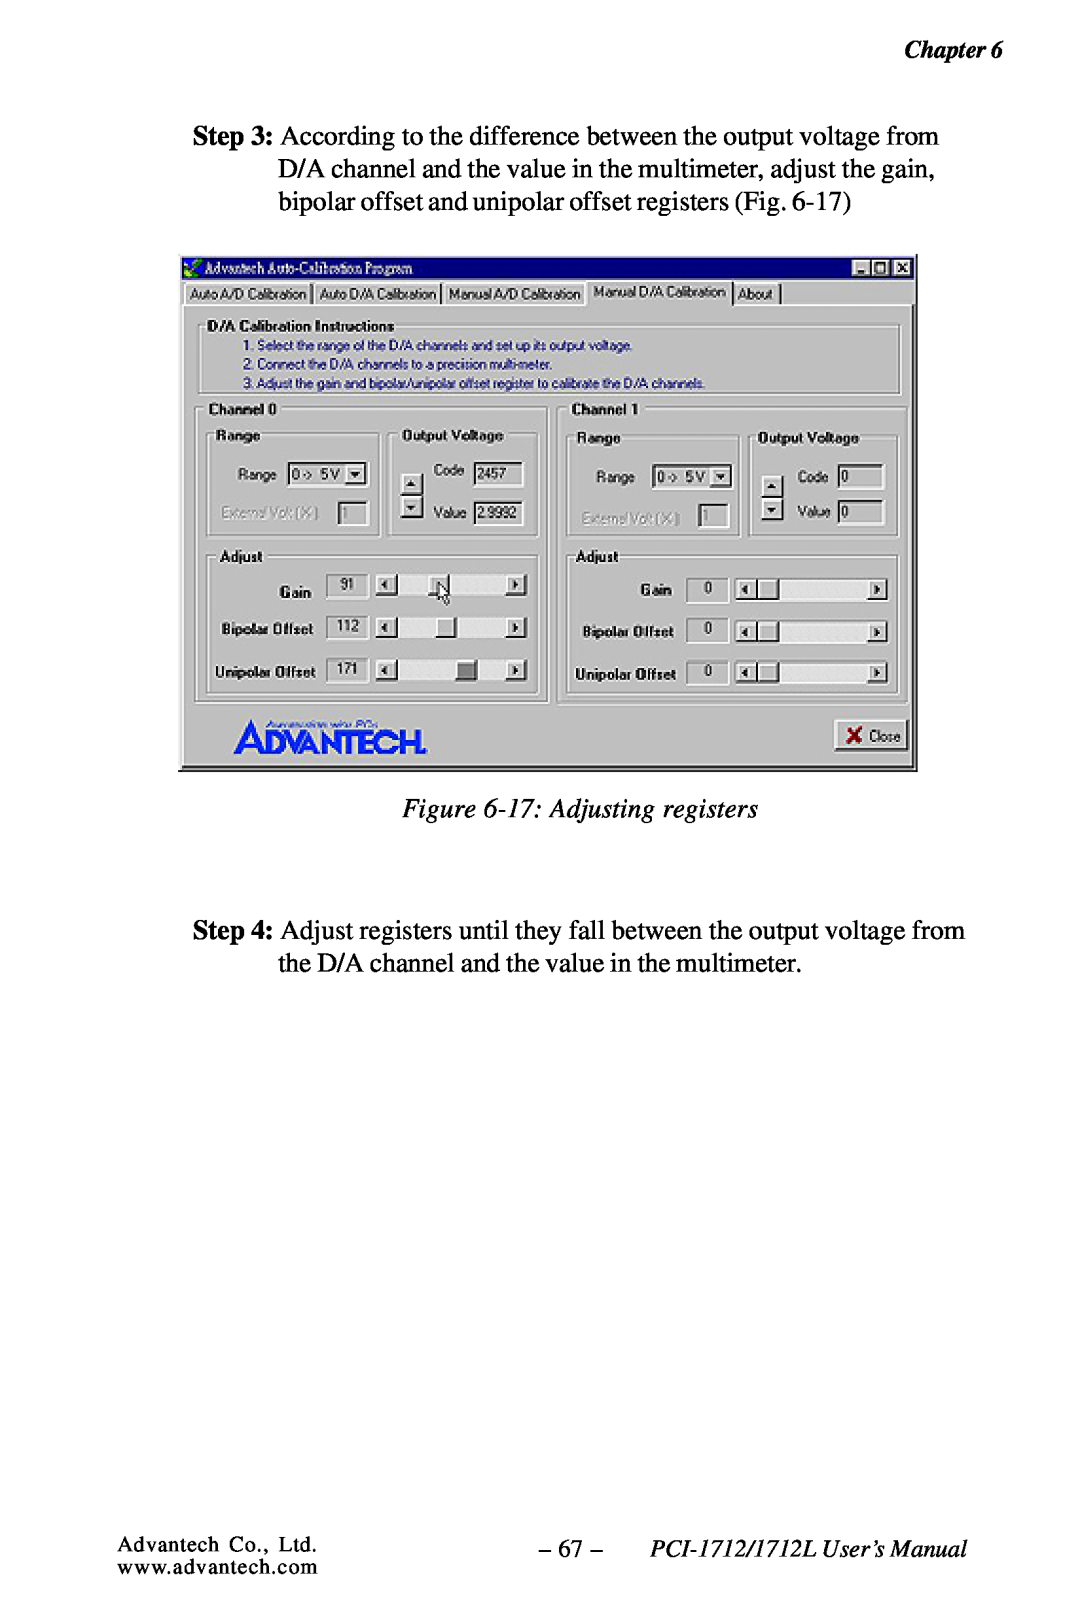 Konica Minolta PCI-1712L user manual 17 Adjusting registers 